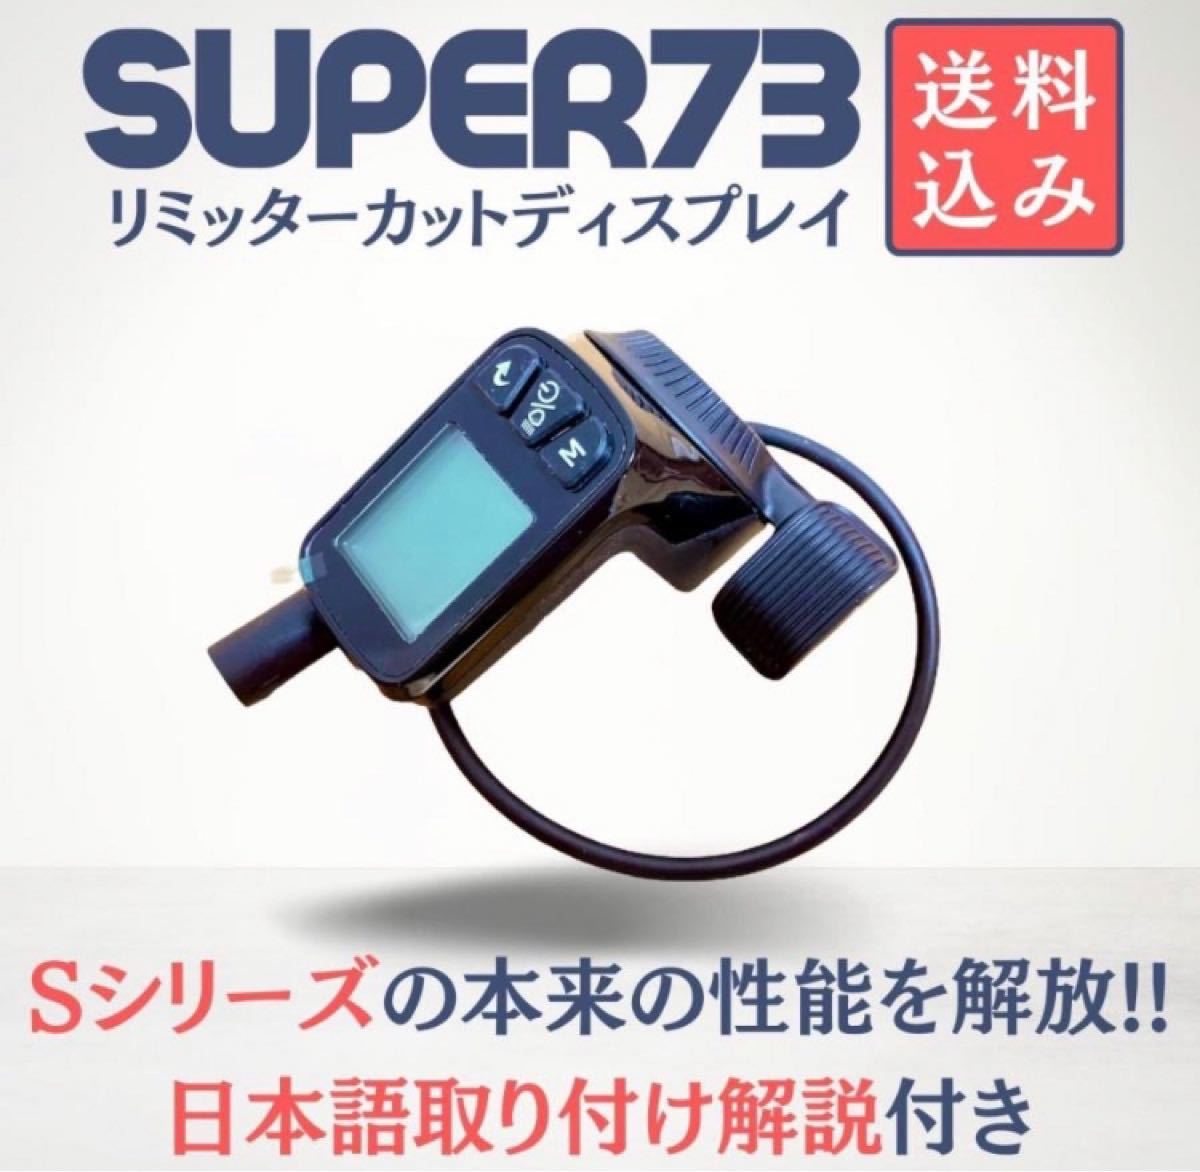 正規品・即納SUPER73 リミッターカット ディスプレイ 日本語取説付き 